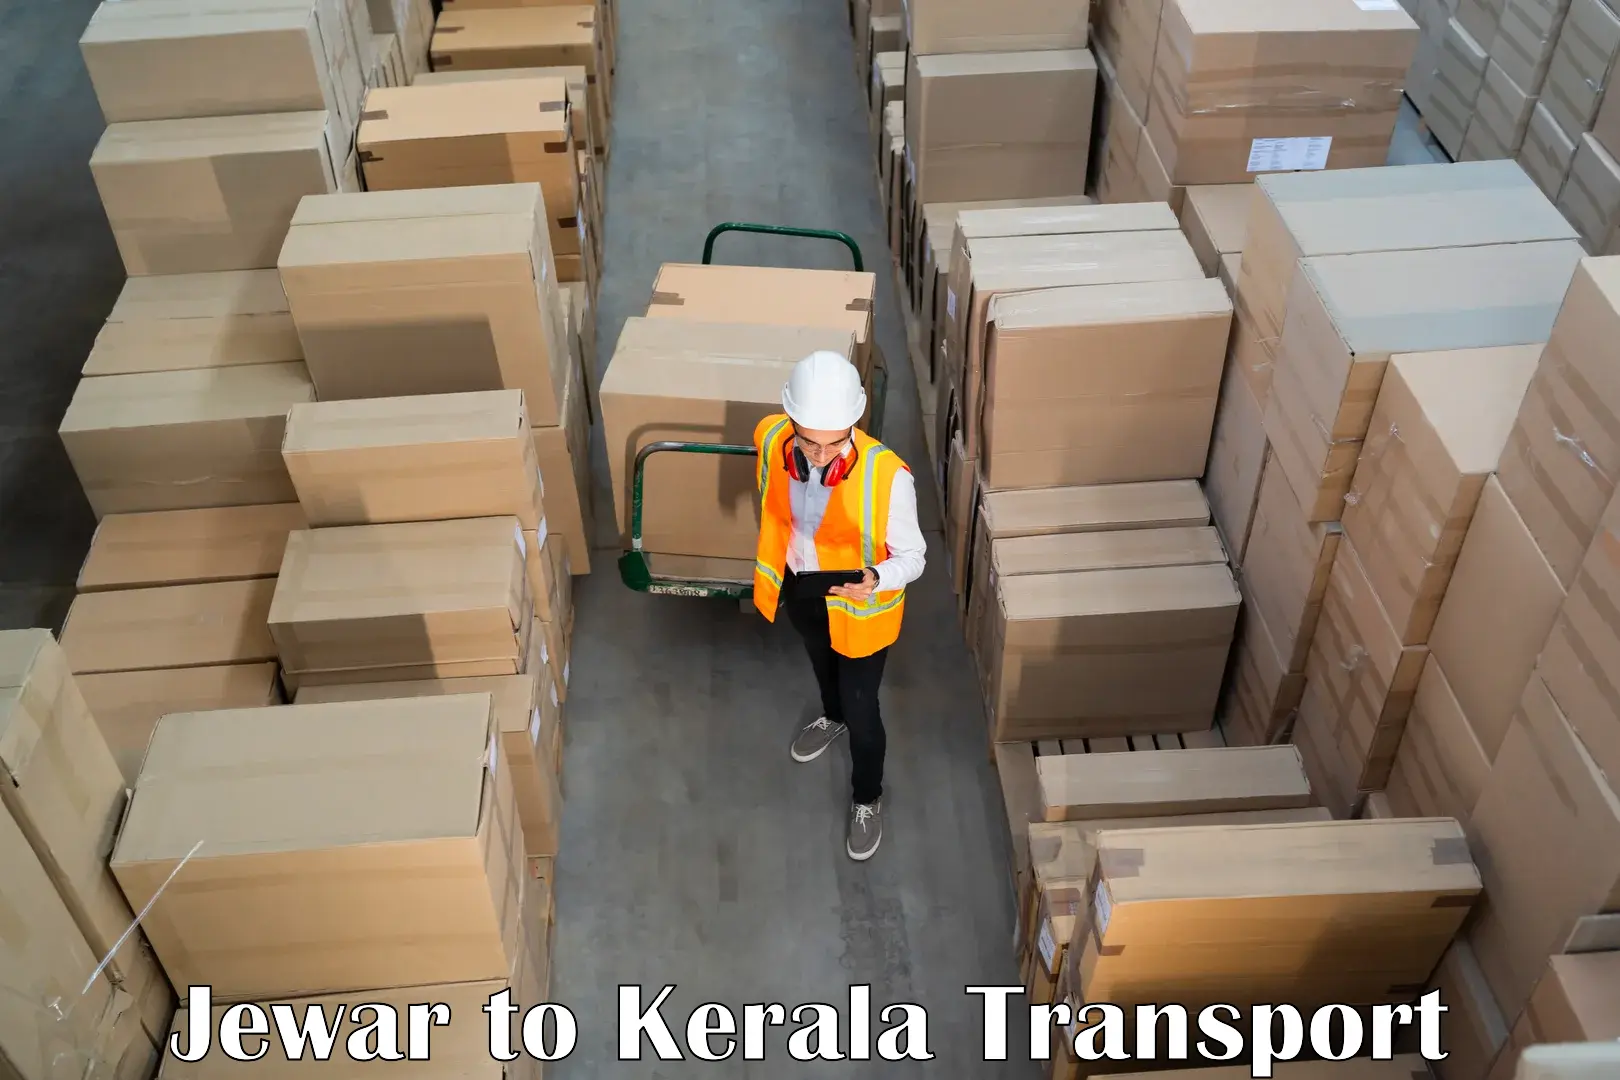 Furniture transport service Jewar to Calicut